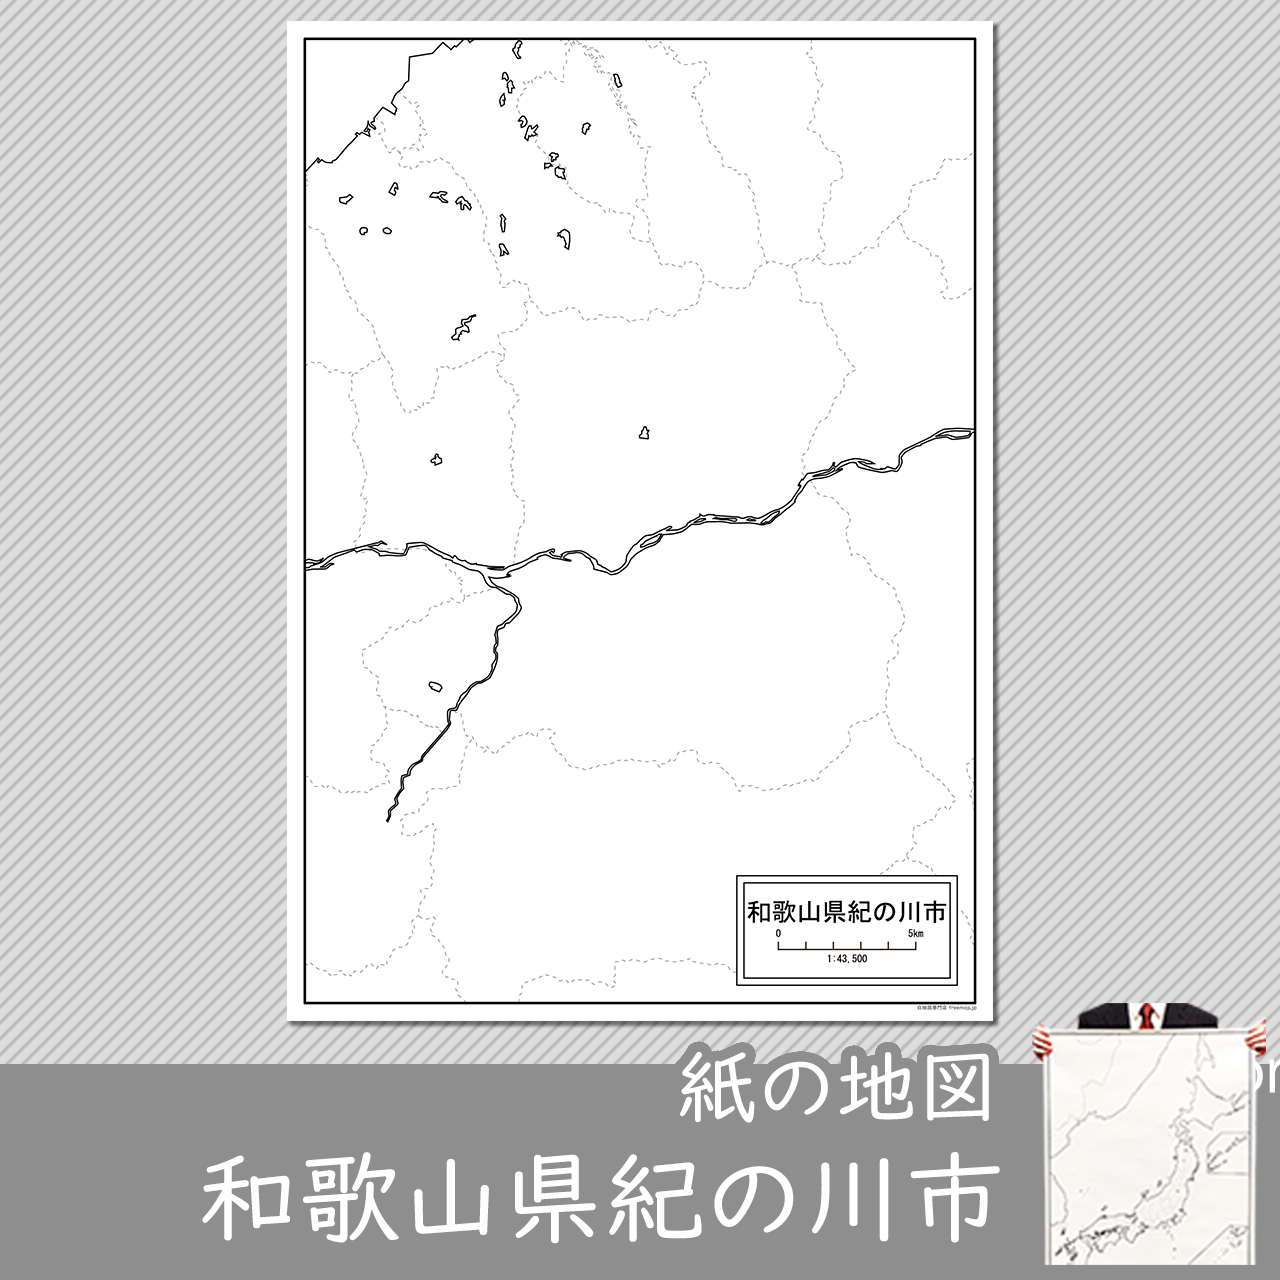 紀の川市の紙の白地図のサムネイル